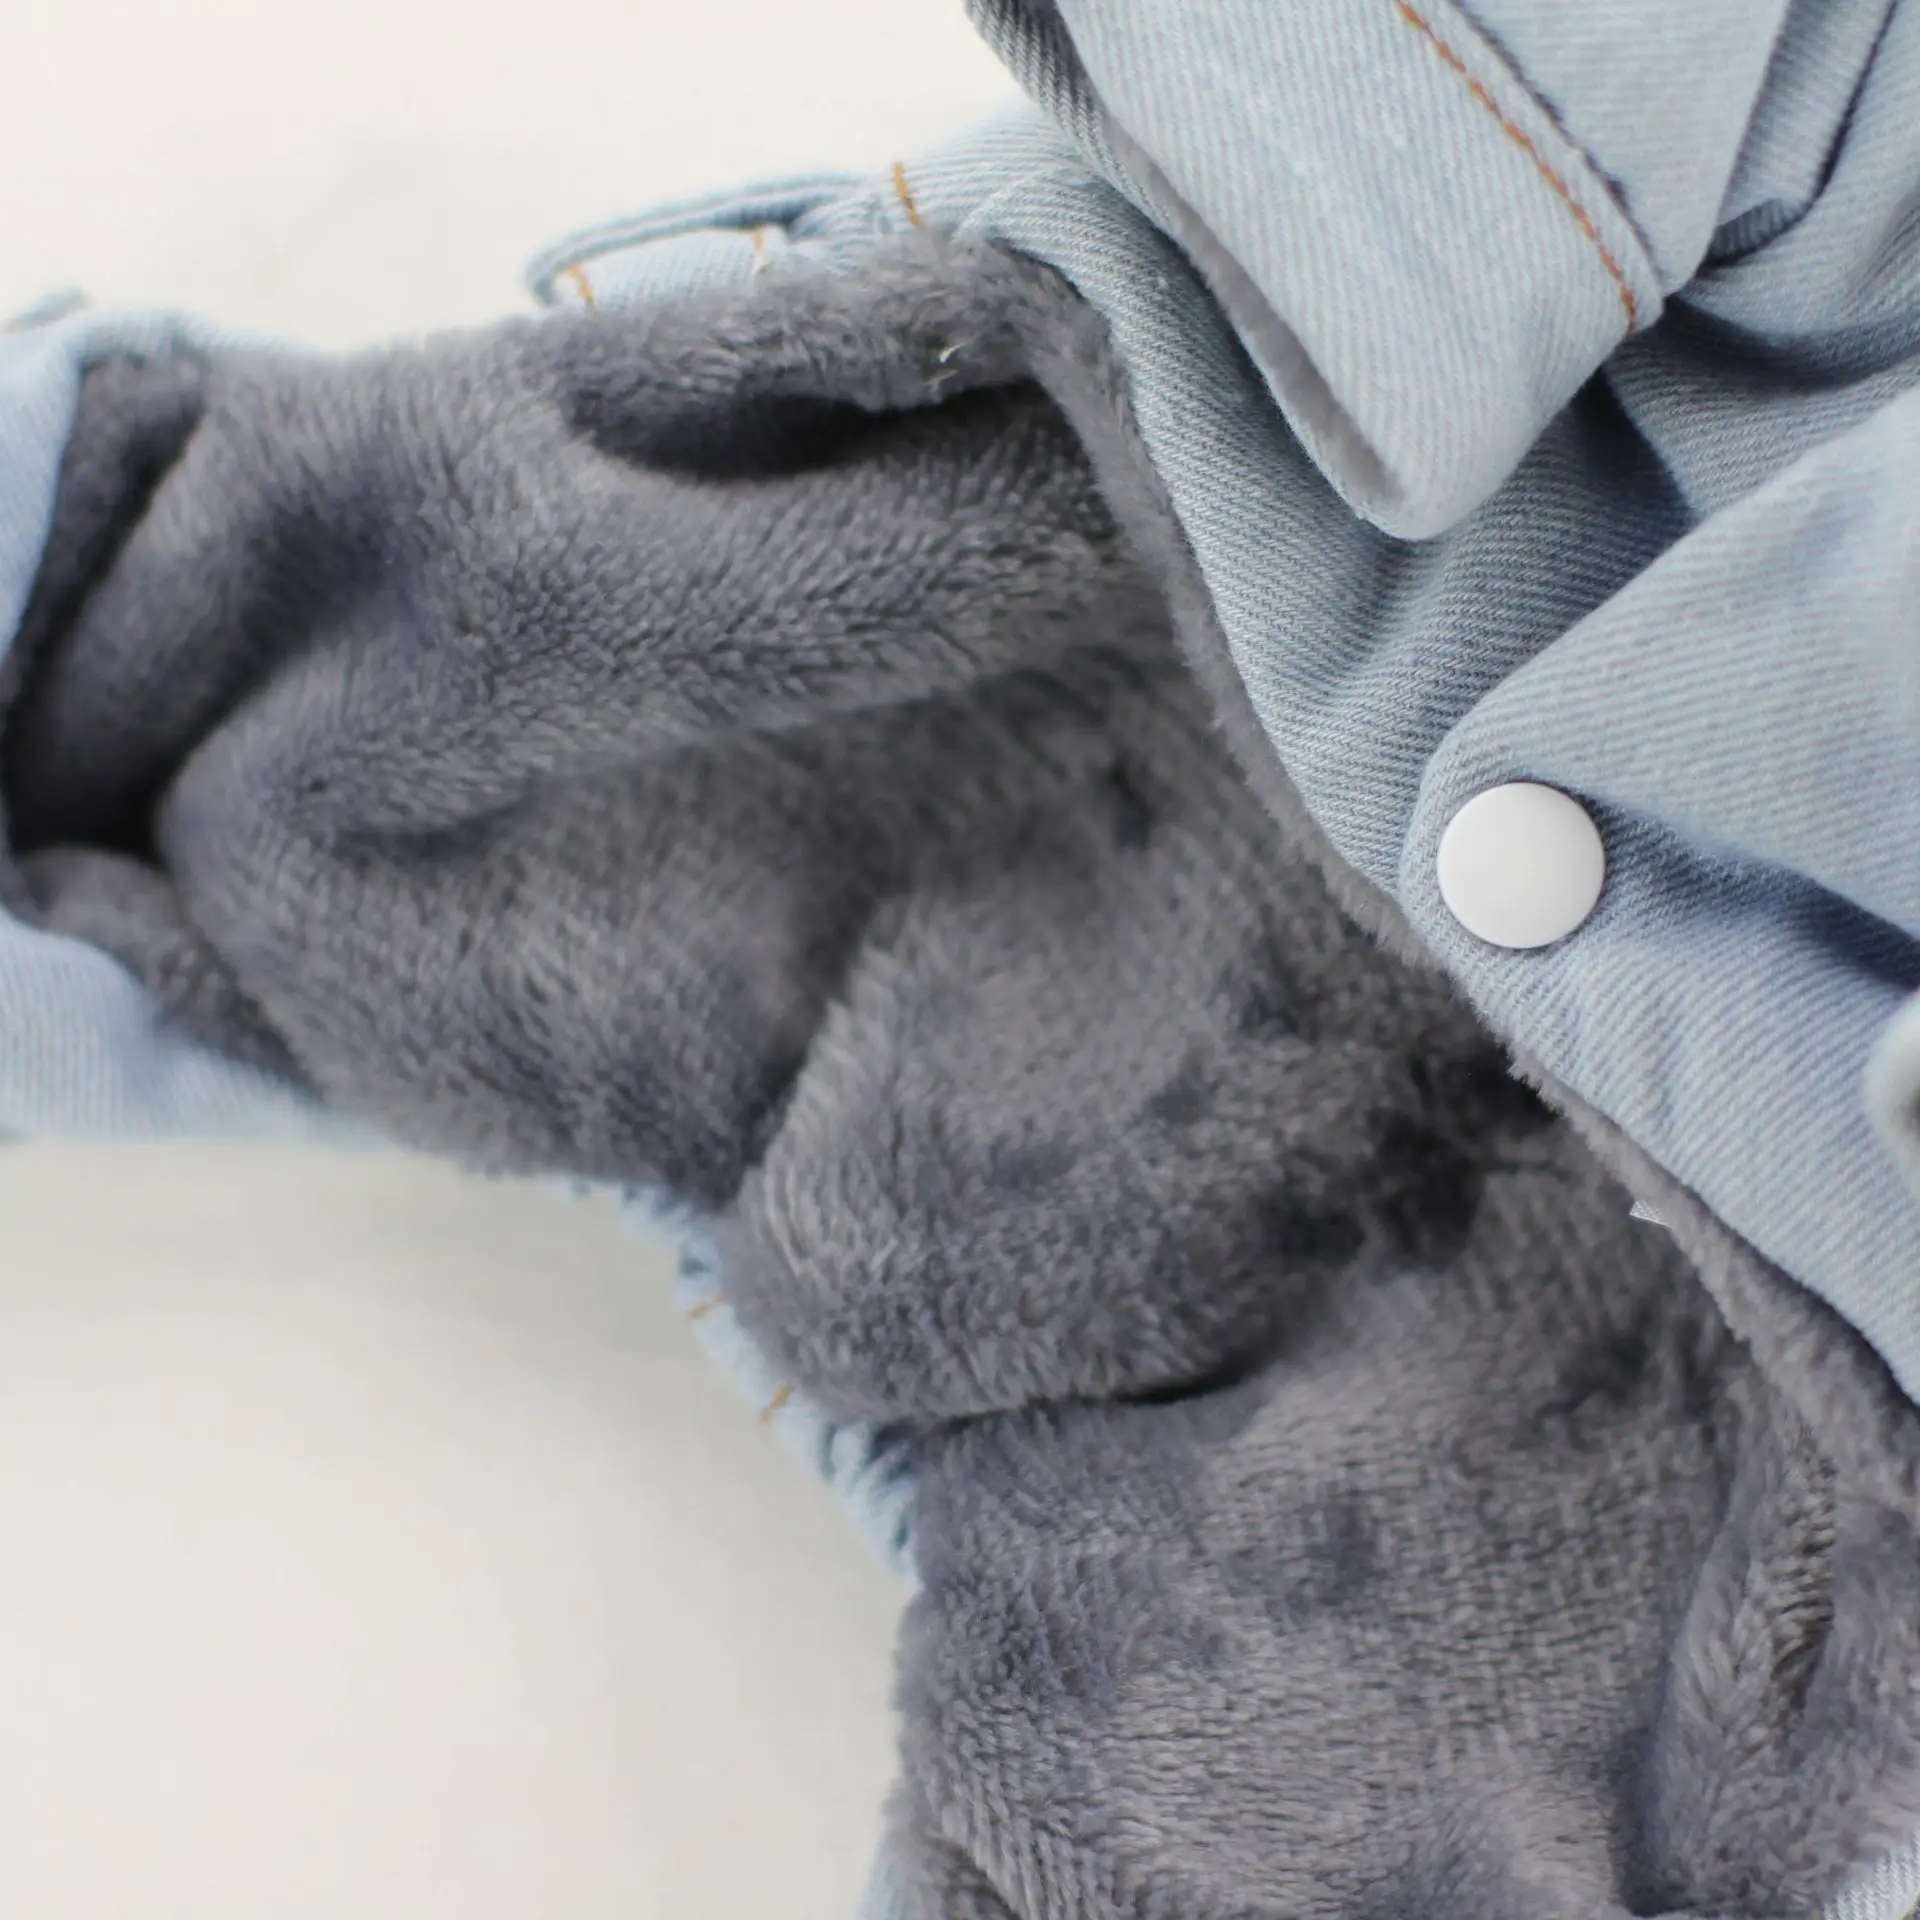 Ковбойский комбинезон на четыре ноги для питомца собаки темно-синий и светильник синего цвета Размеры Xs-xl джинсовая одежда для собак джинсовая одежда для животных зима